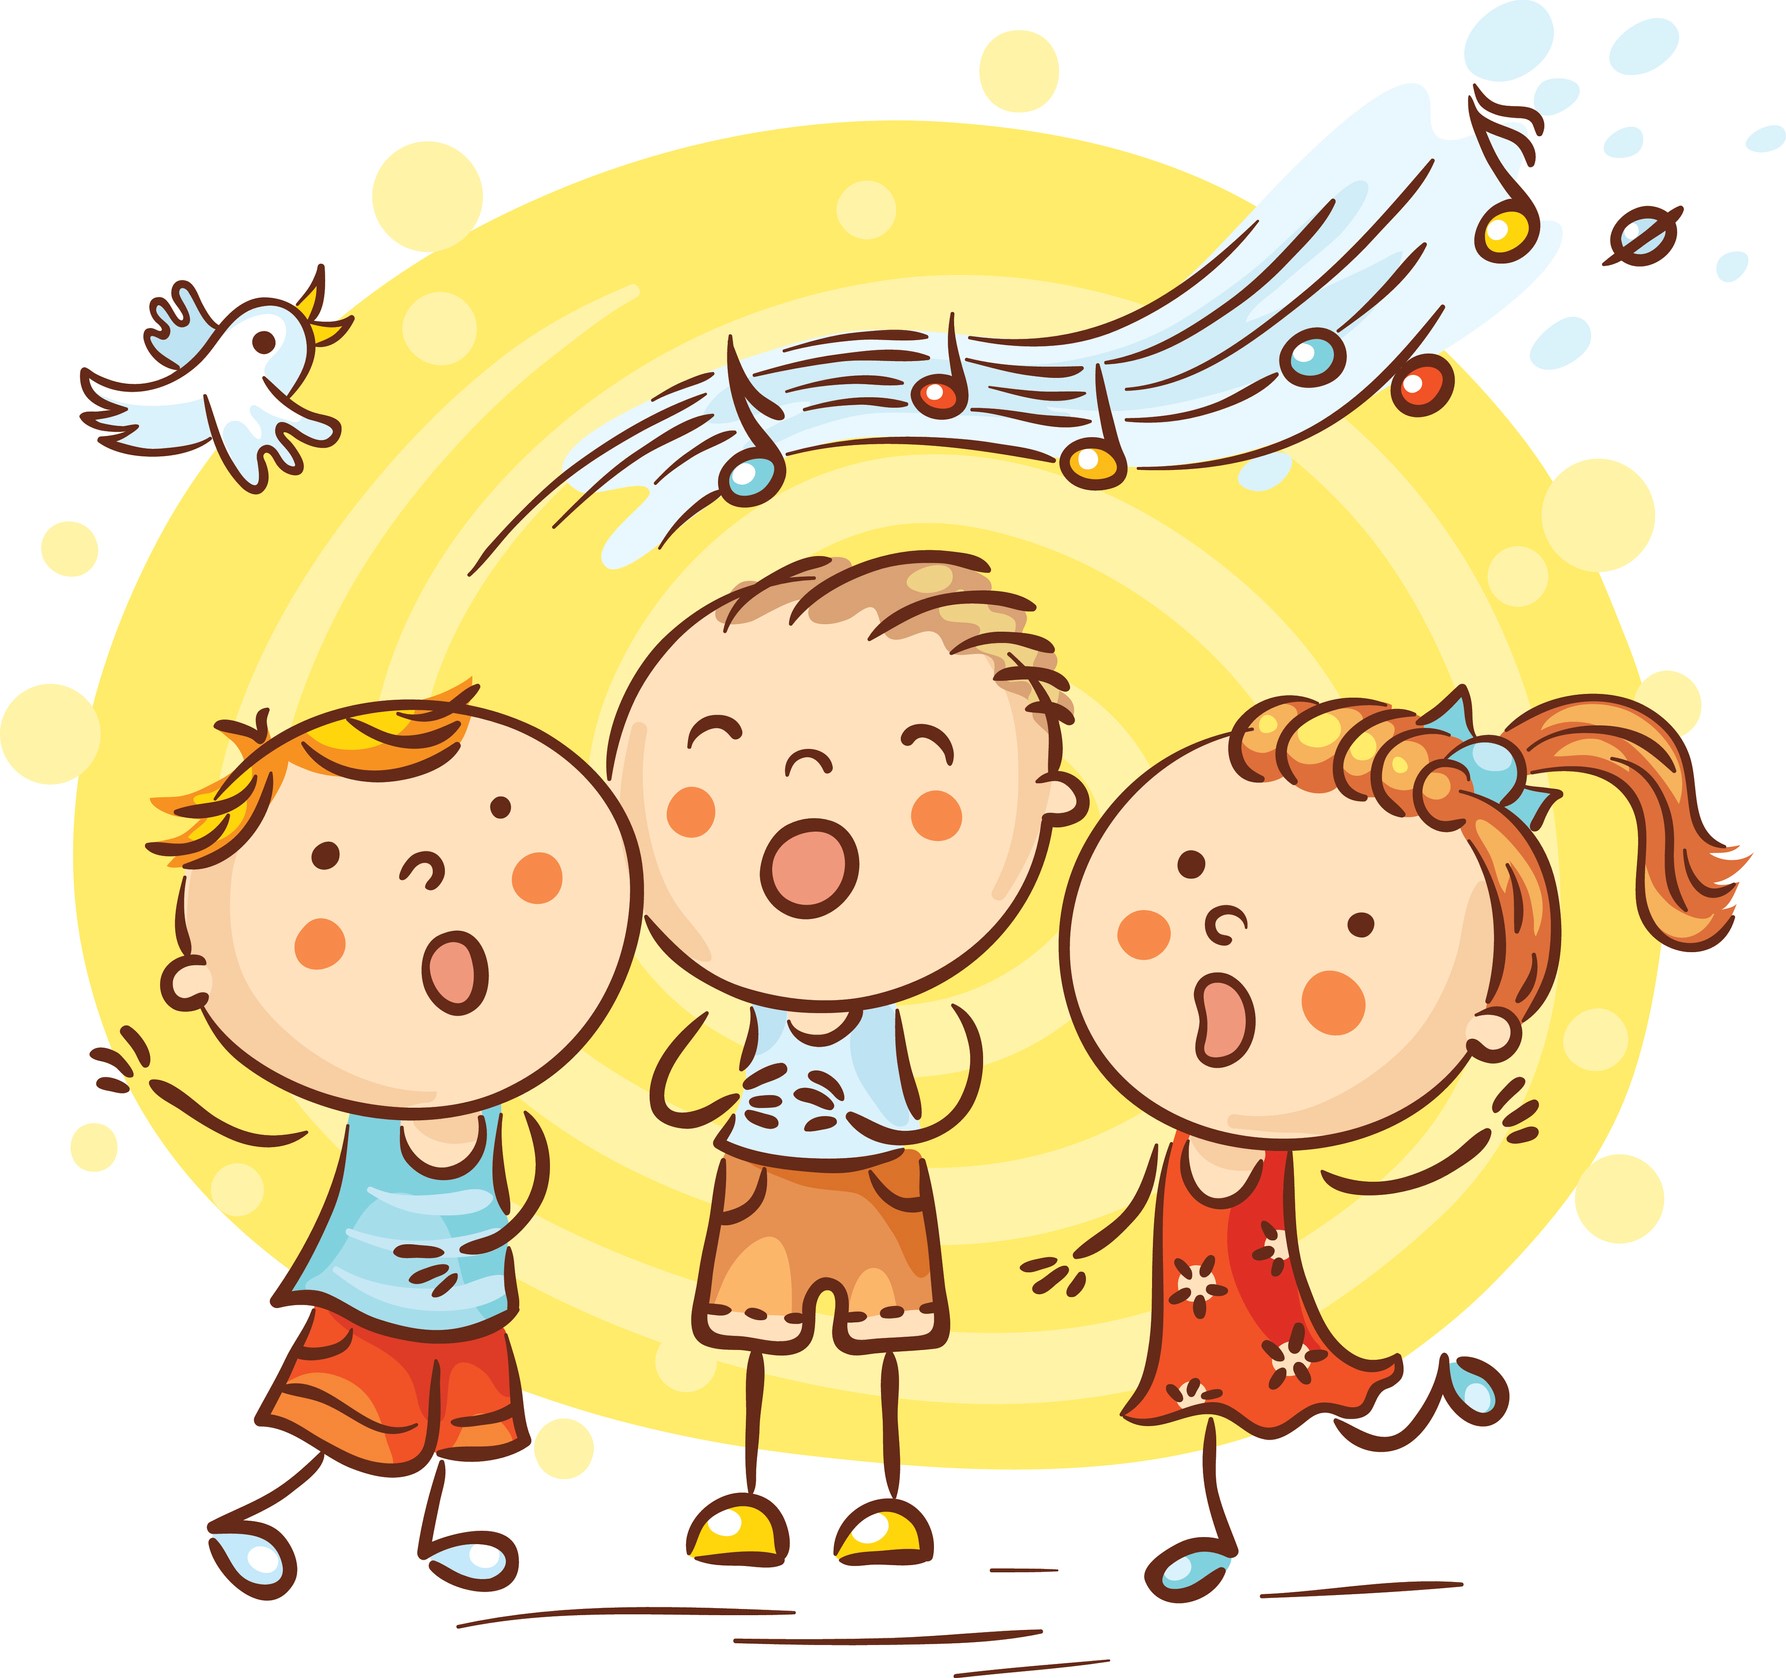 Piirroskuva, jossa kolme lasta laulaa keltaista taustaa vasten.